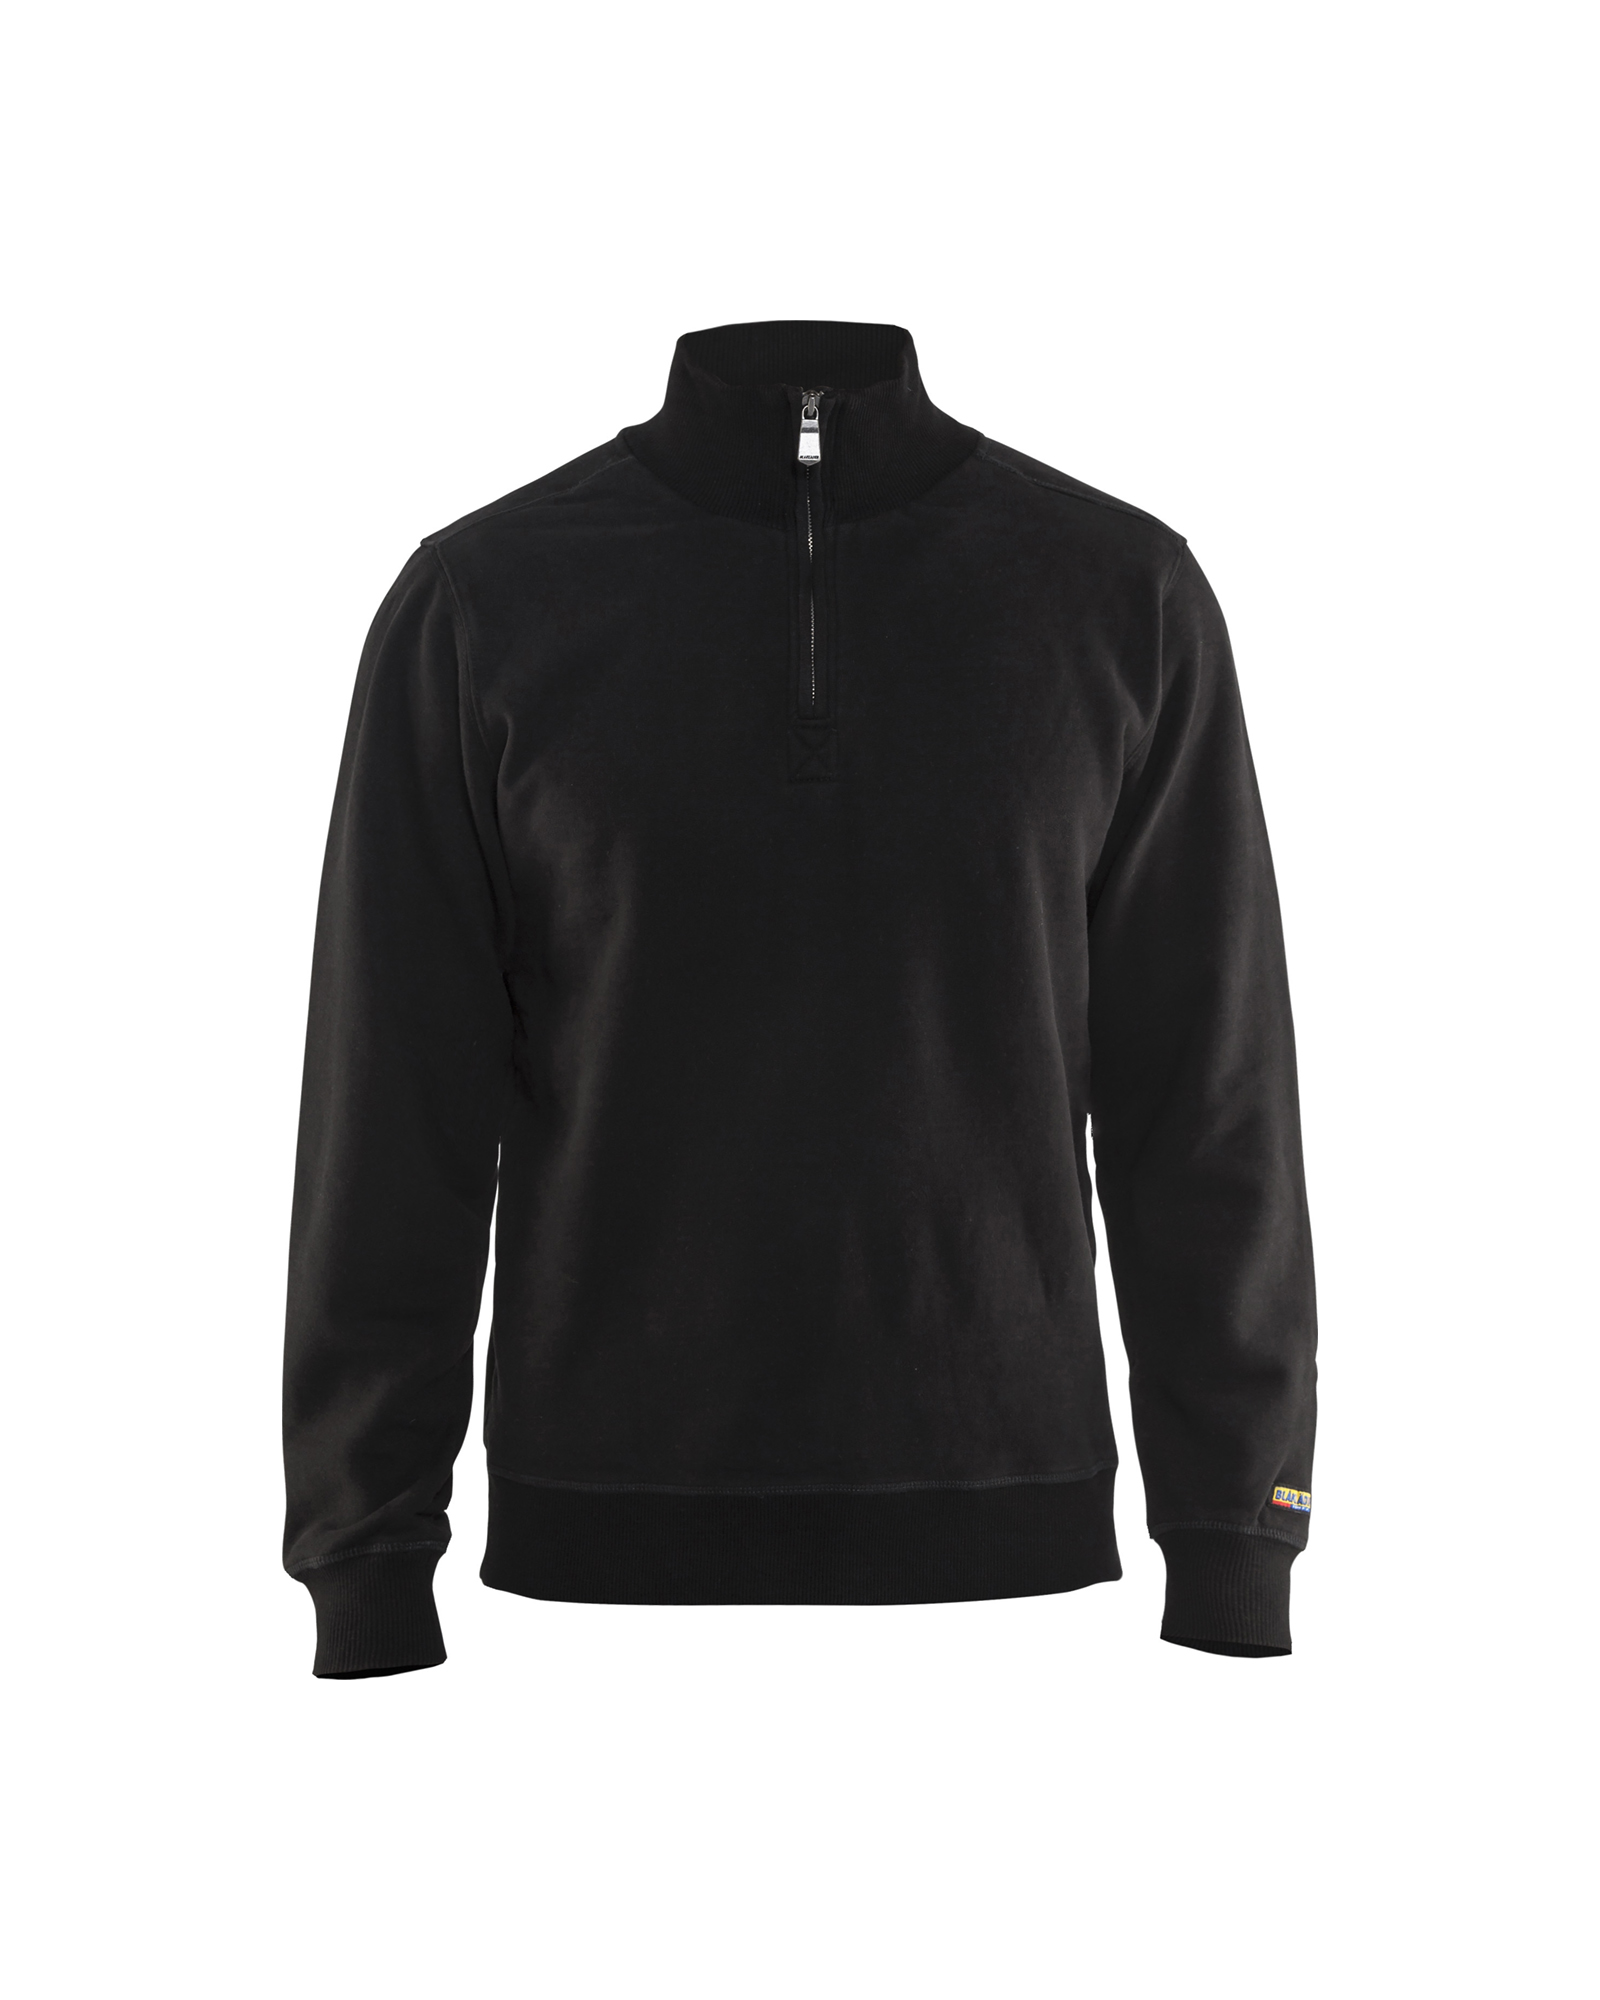 Black XX-Large Blaklader 334910489900XXL Sweatshirt with Zipper